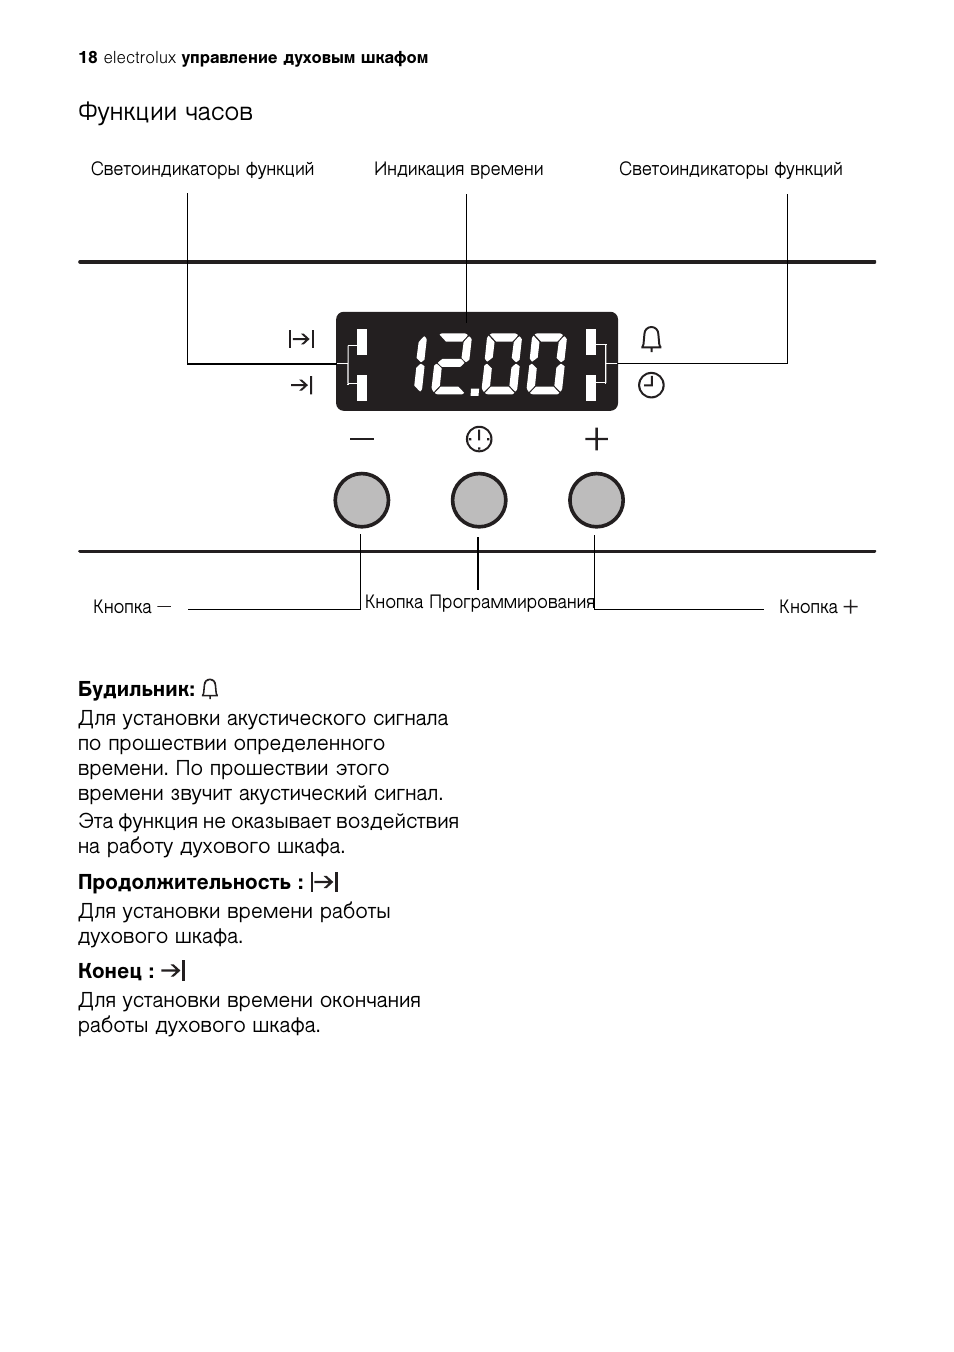 Как установить часы на электроплите Электролюкс